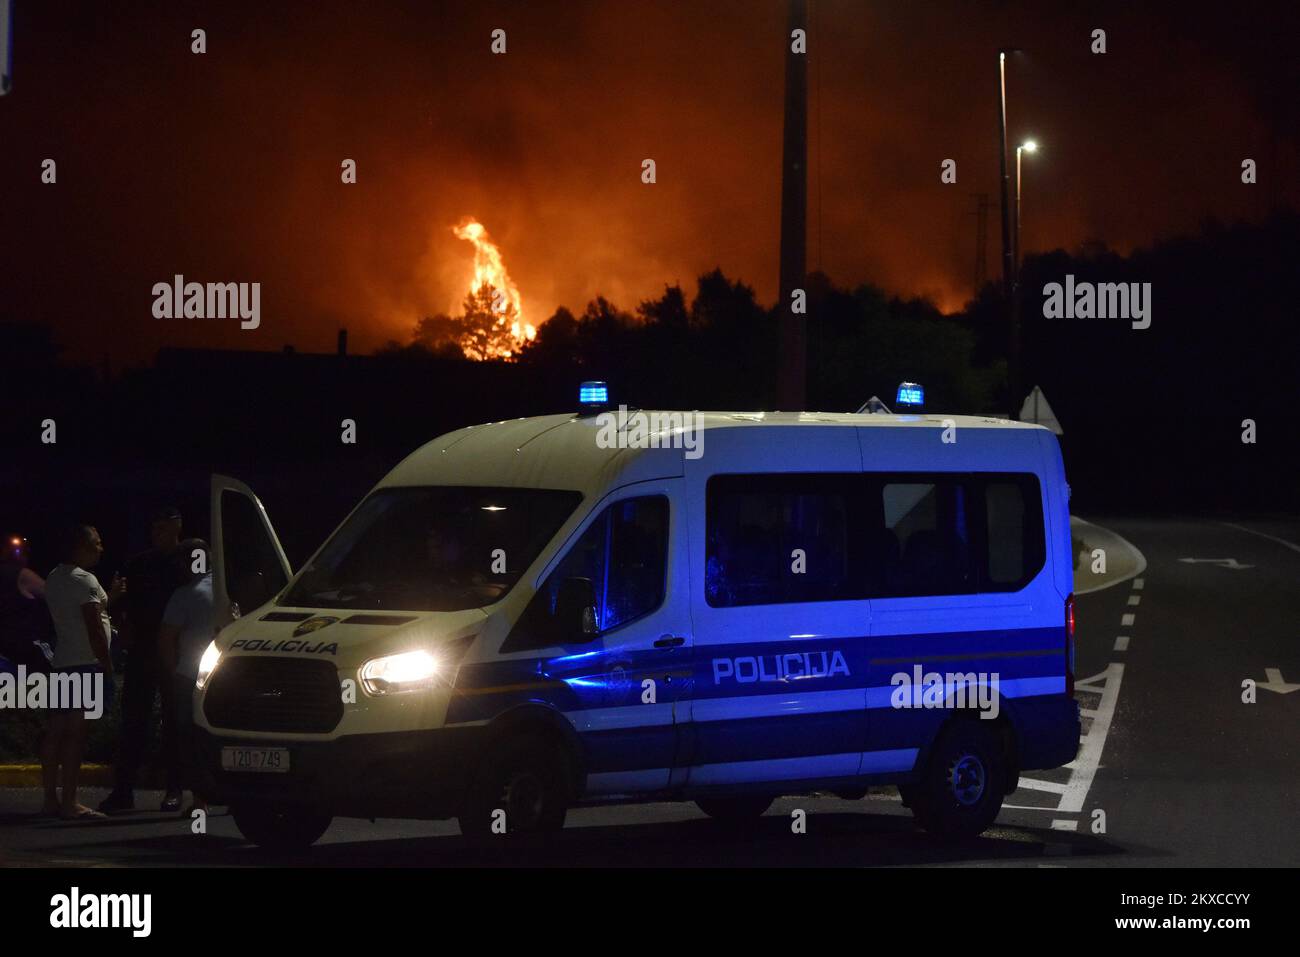 28.07.2019., Bilice - Feuer noch aktiv, Feuerwehrleute und Löschflugzeuge versuchen, das Feuer unter Kontrolle zu halten. Foto: Hrvoje Jelavic/PIXSELL Stockfoto